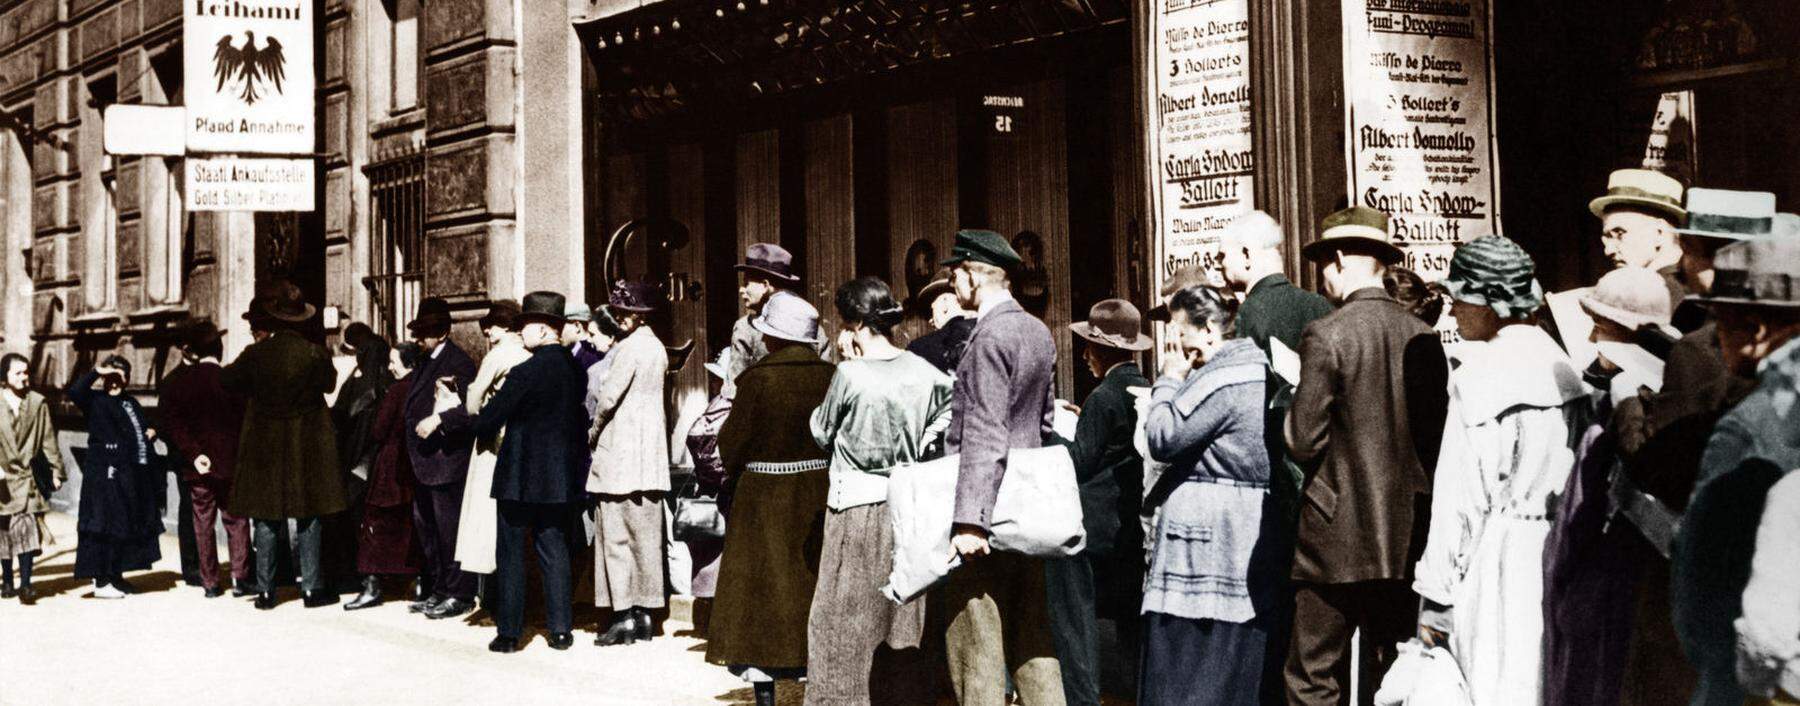 Goldene Zeiten für Pfandleiher in der Wirtschaftskrise. Eine Menschenschlange vor einer Leihanstalt in Berlin 1924.